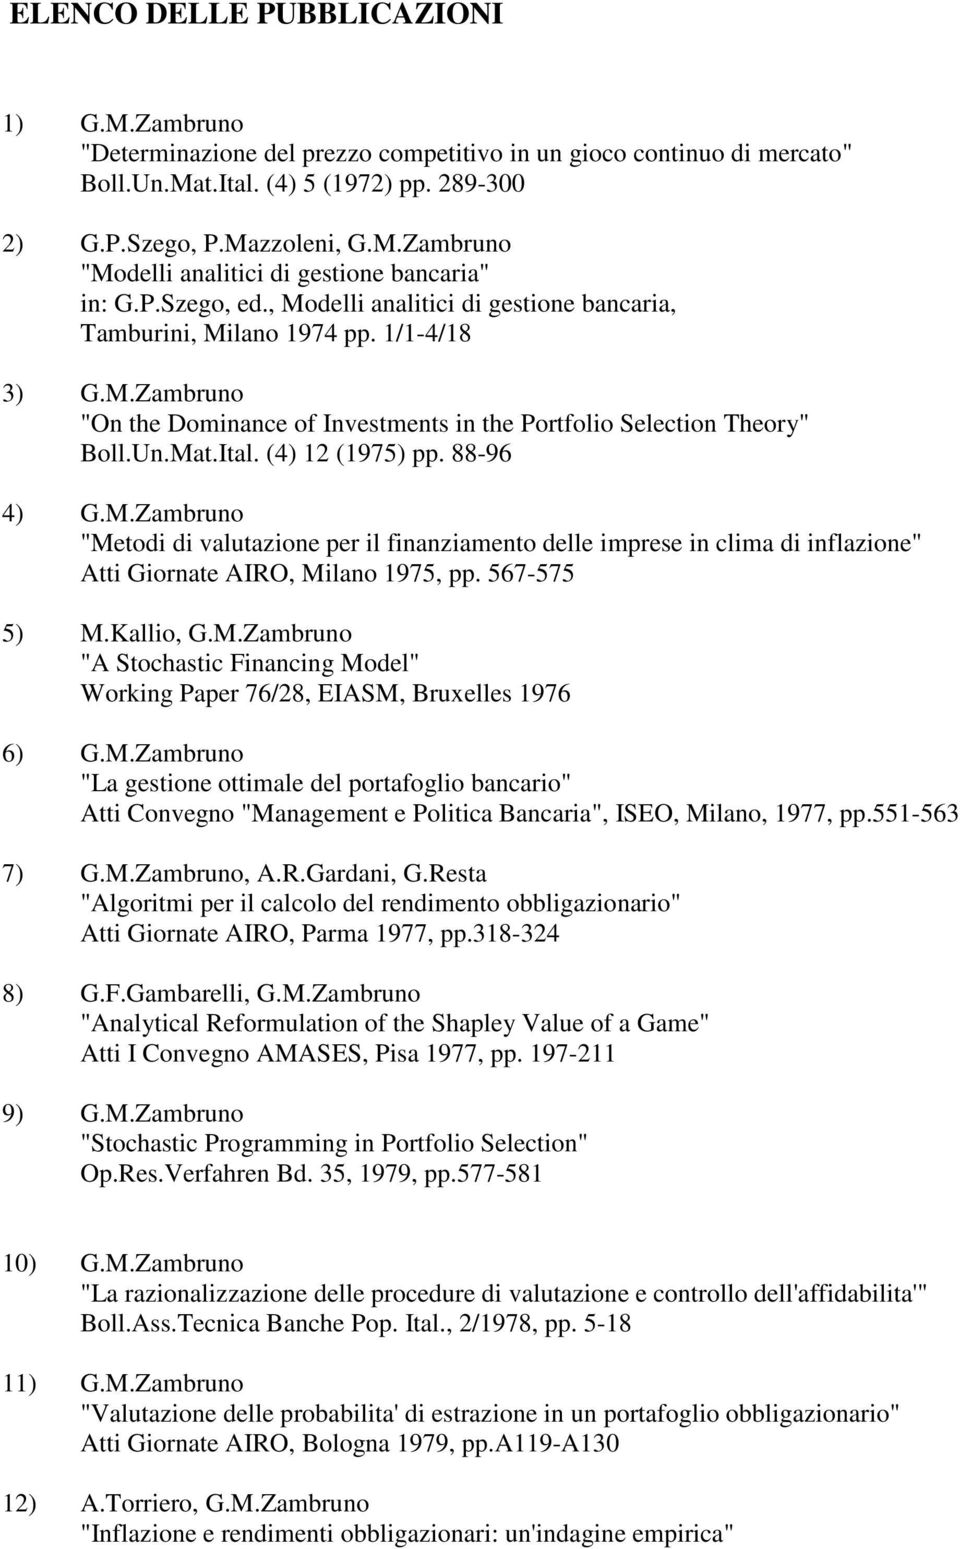 (4) 12 (1975) pp. 88-96 4) G.M.Zambruno "Metodi di valutazione per il finanziamento delle imprese in clima di inflazione" Atti Giornate AIRO, Milano 1975, pp. 567-575 5) M.Kallio, G.M.Zambruno "A Stochastic Financing Model" Working Paper 76/28, EIASM, Bruxelles 1976 6) G.